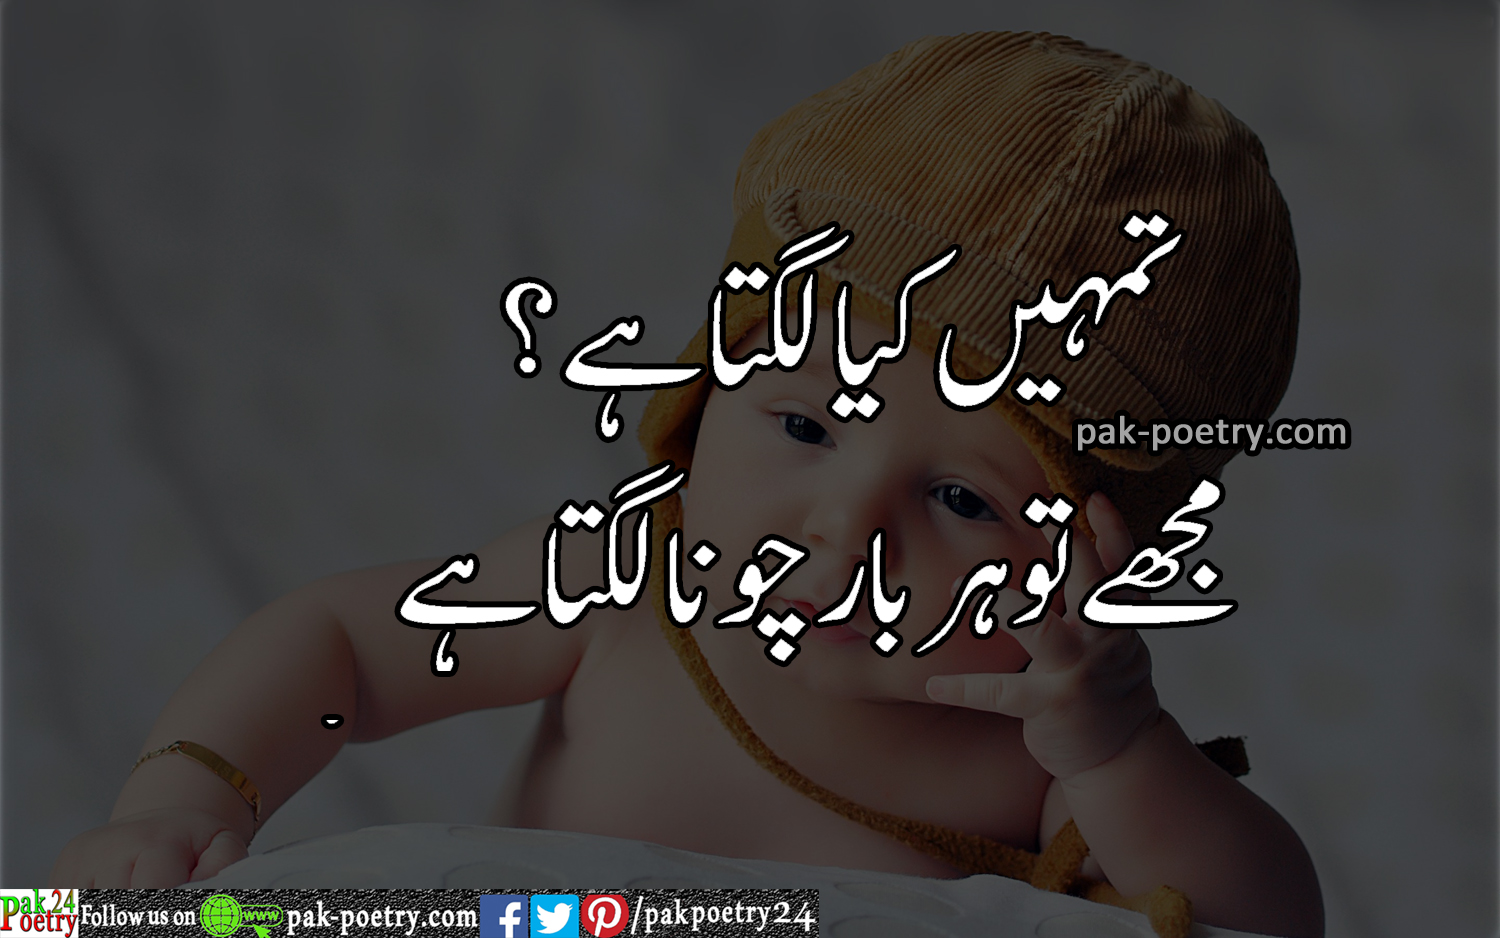 funny poetry in urdu - tumhy keya lgta hy? - Pak Poetry 24